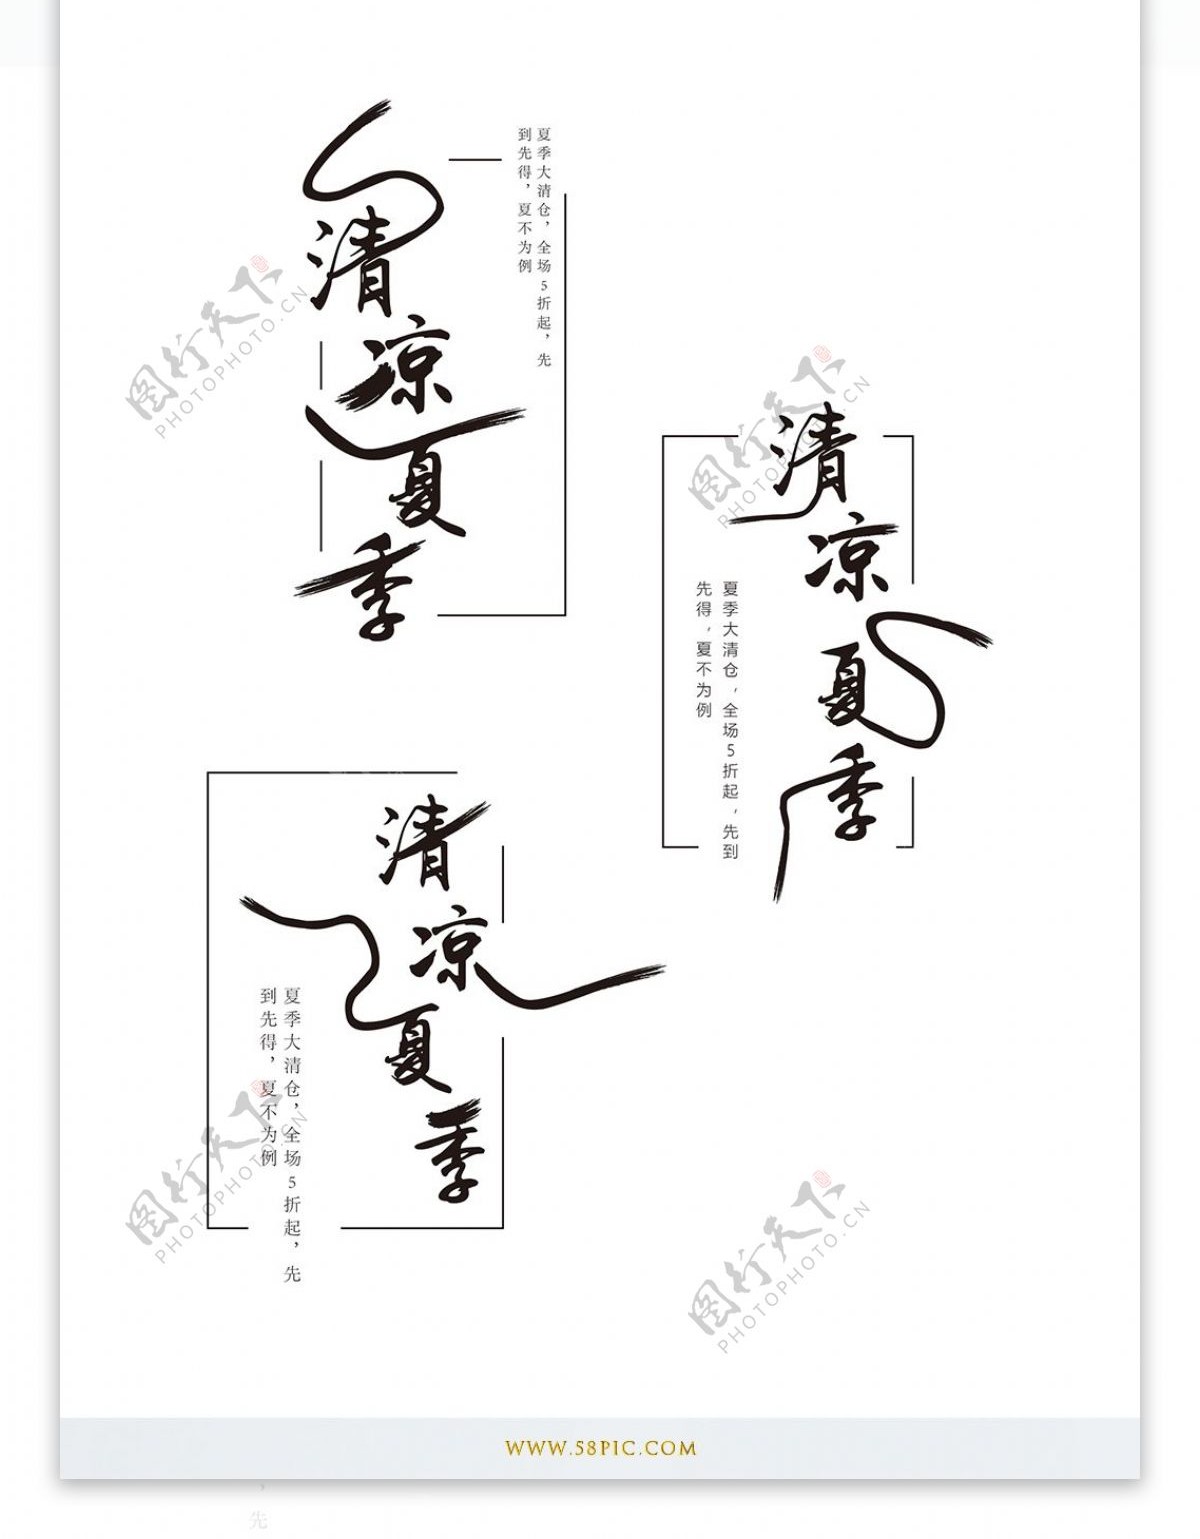 原创中国风清凉夏季艺术字体设计